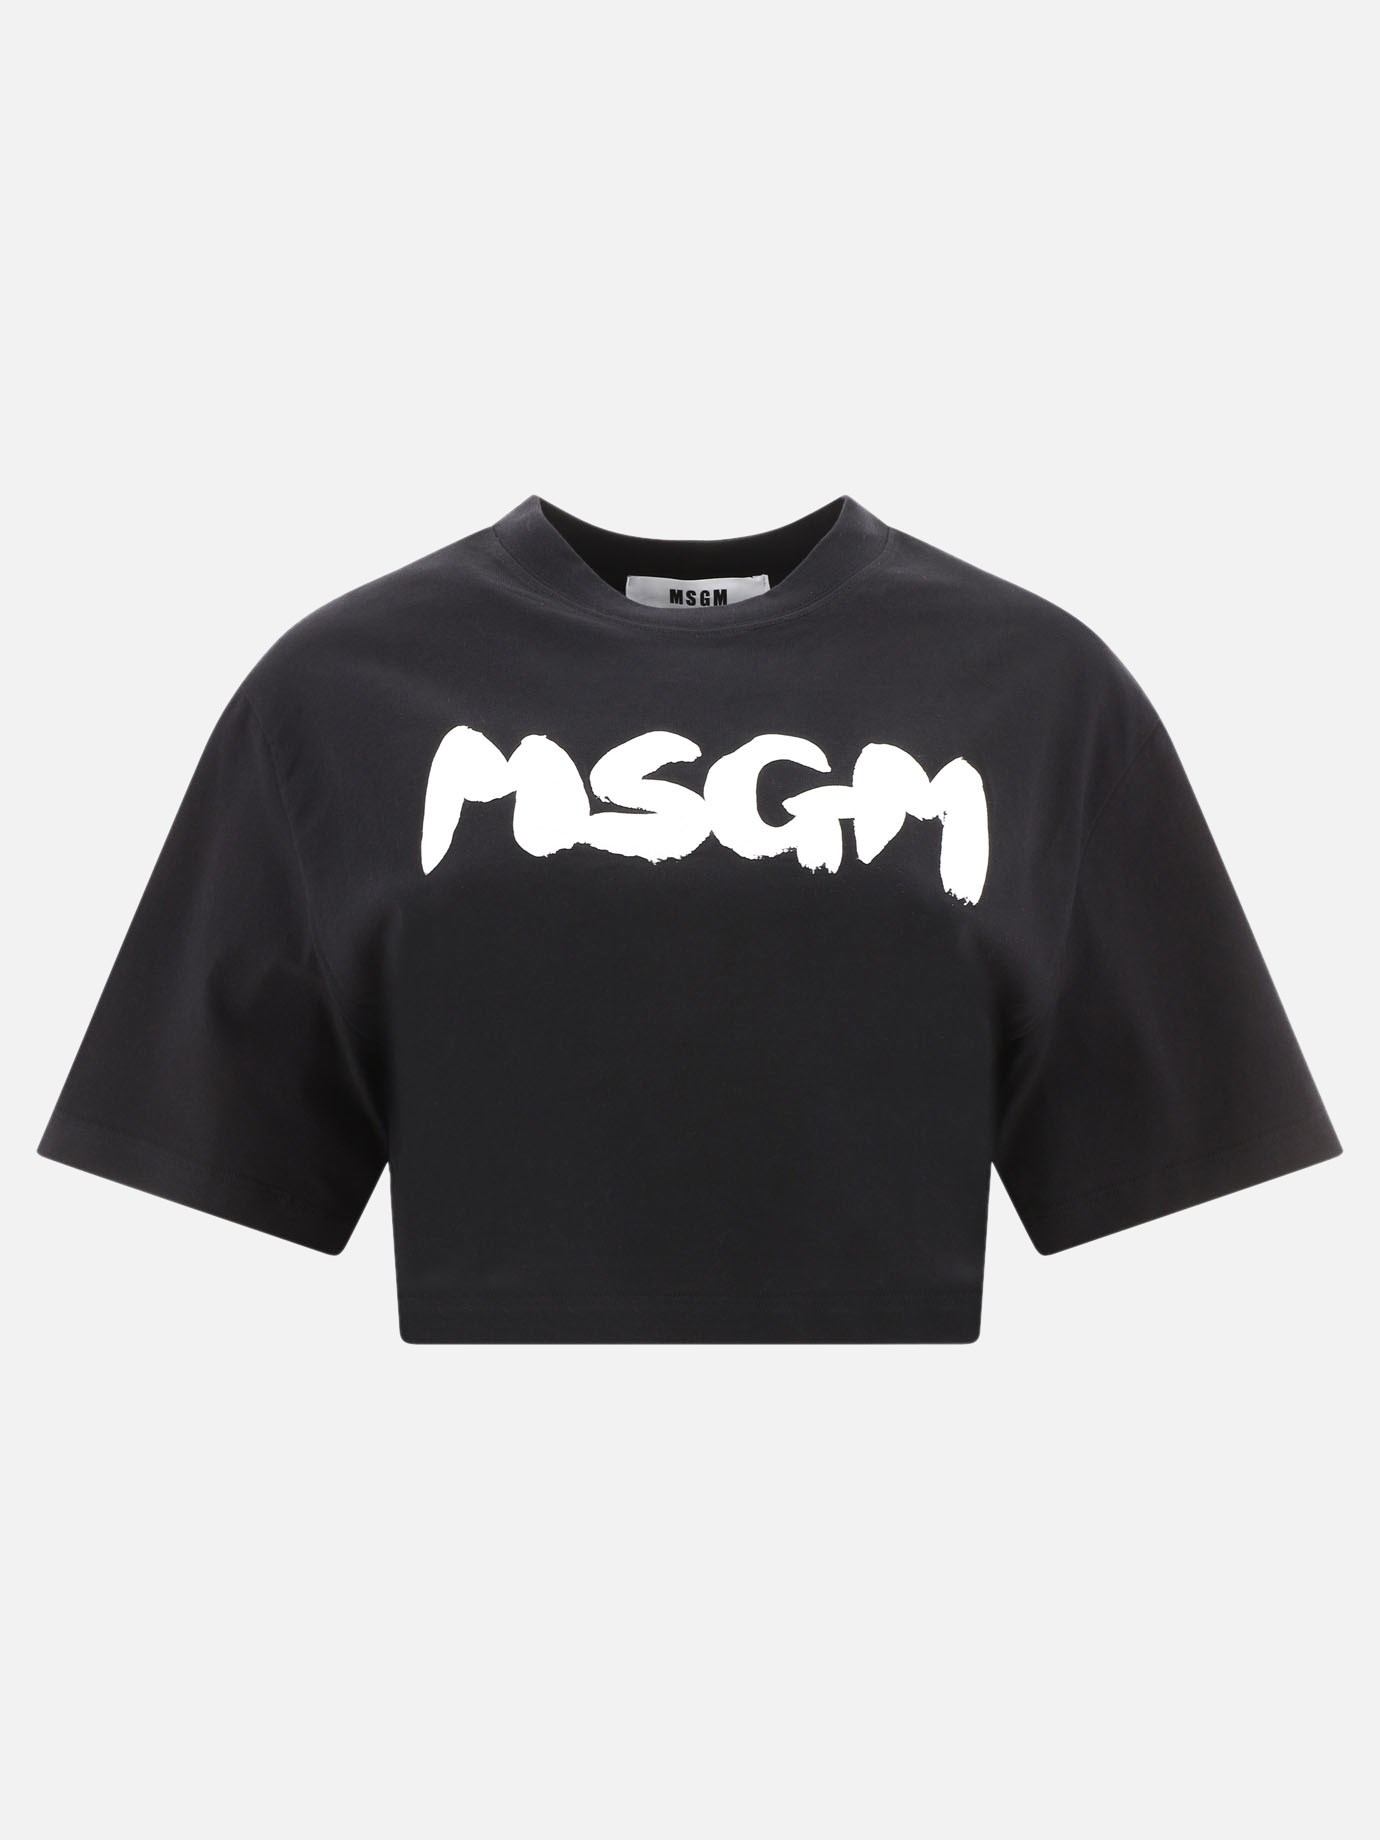  Msgm  cropped t-shirtby Msgm - 0